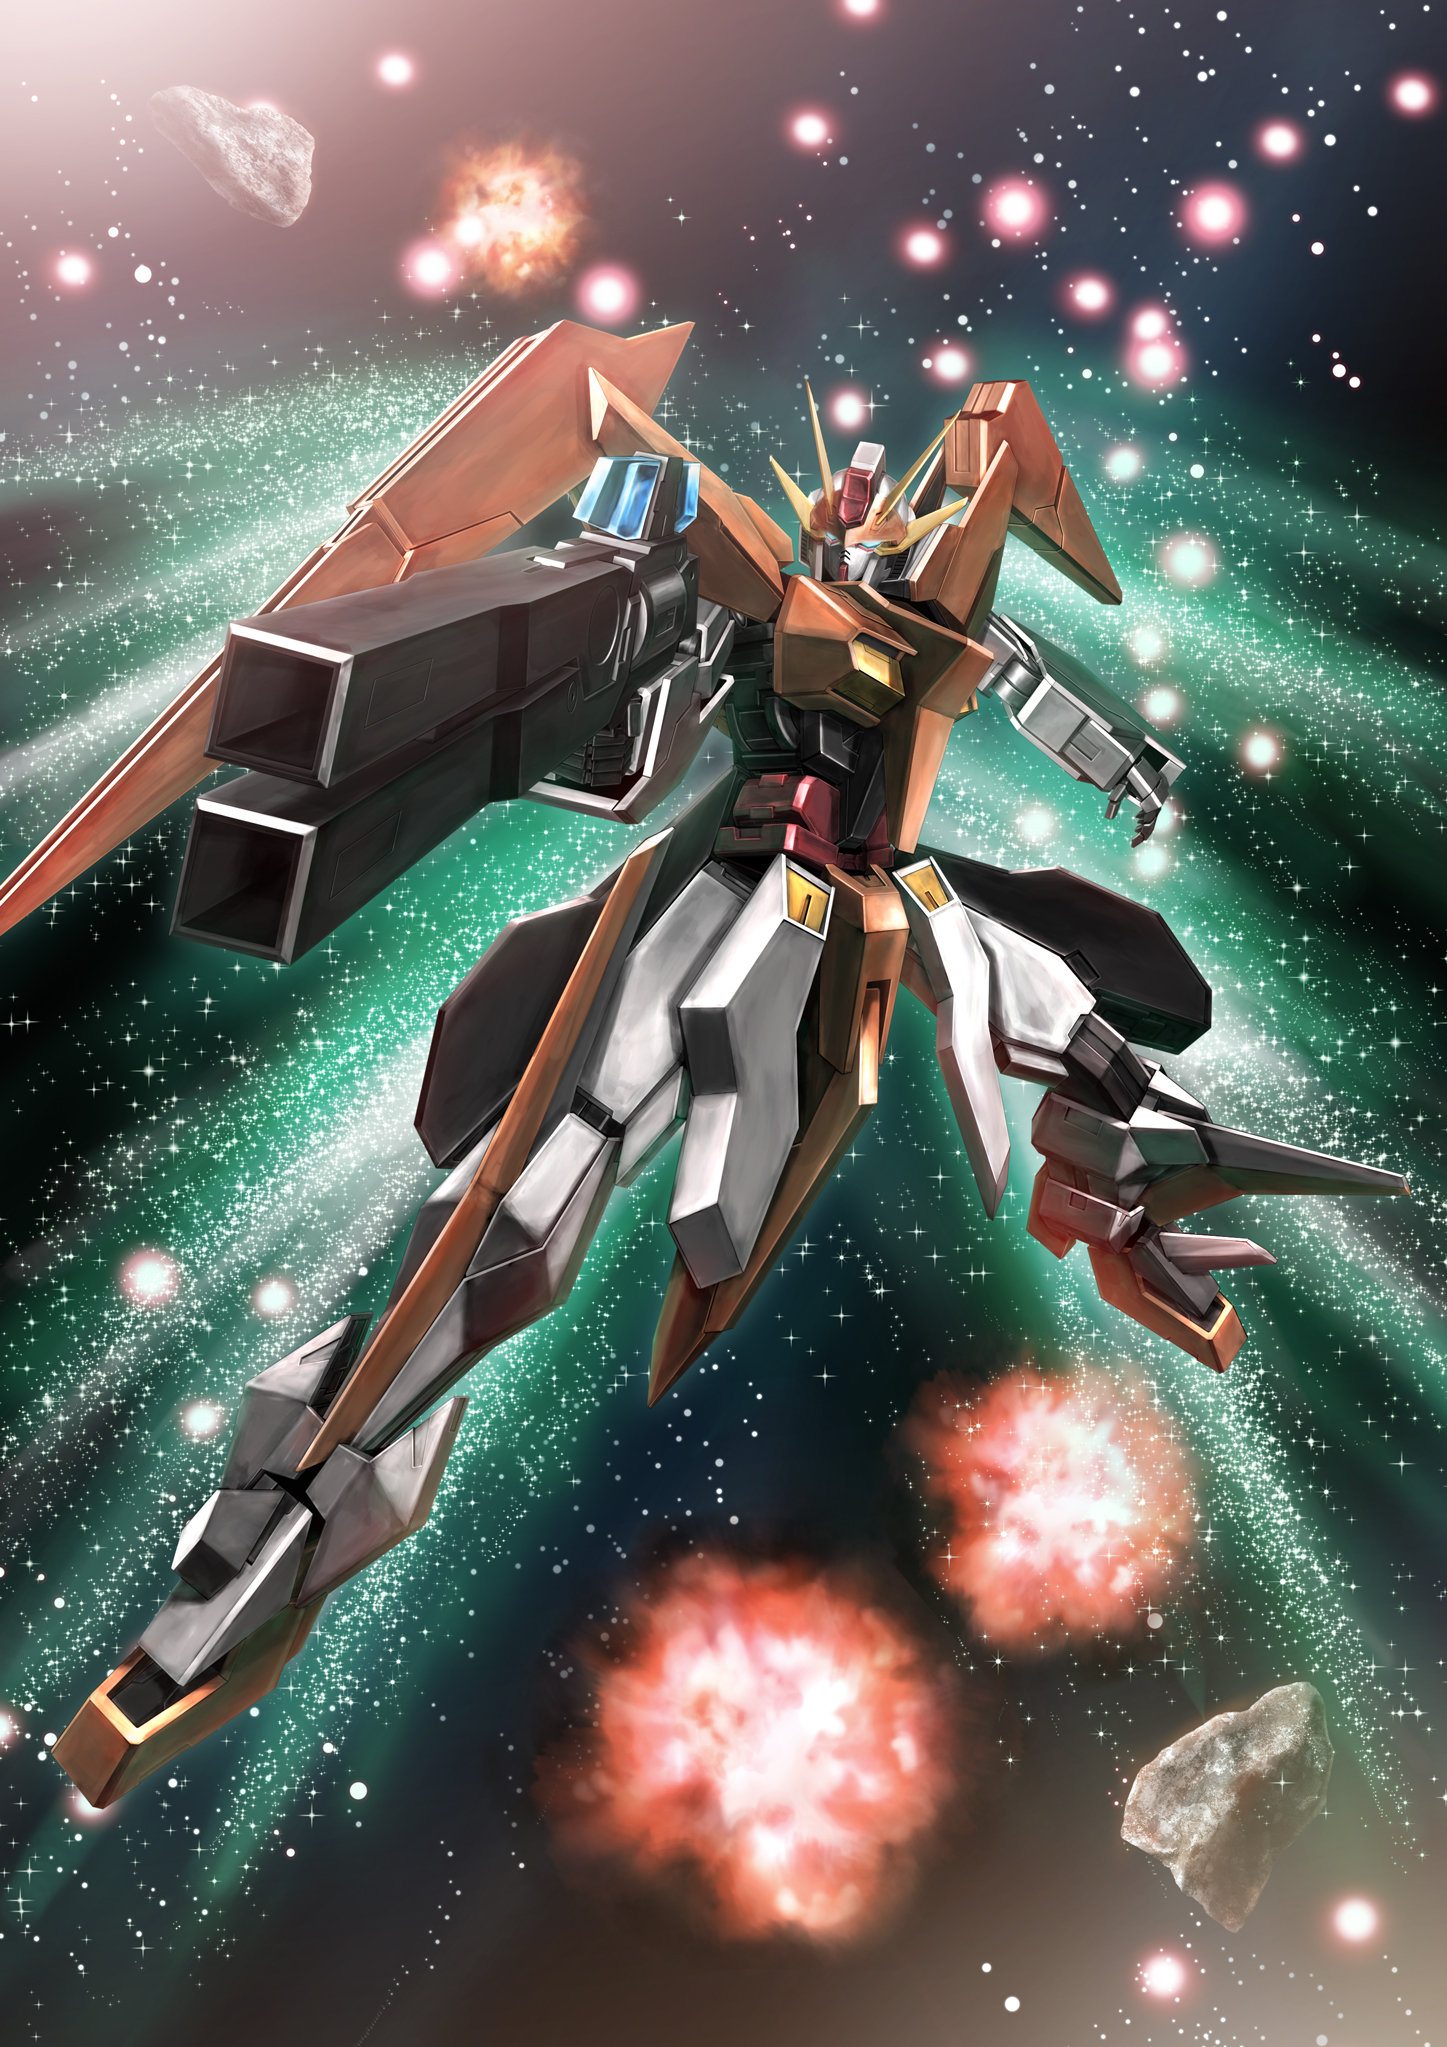 Arios Gundam Anime Mechs Gundam Super Robot Wars Mobile Suit Gundam 00 Artwork Digital Art Fan Art 1447x2047